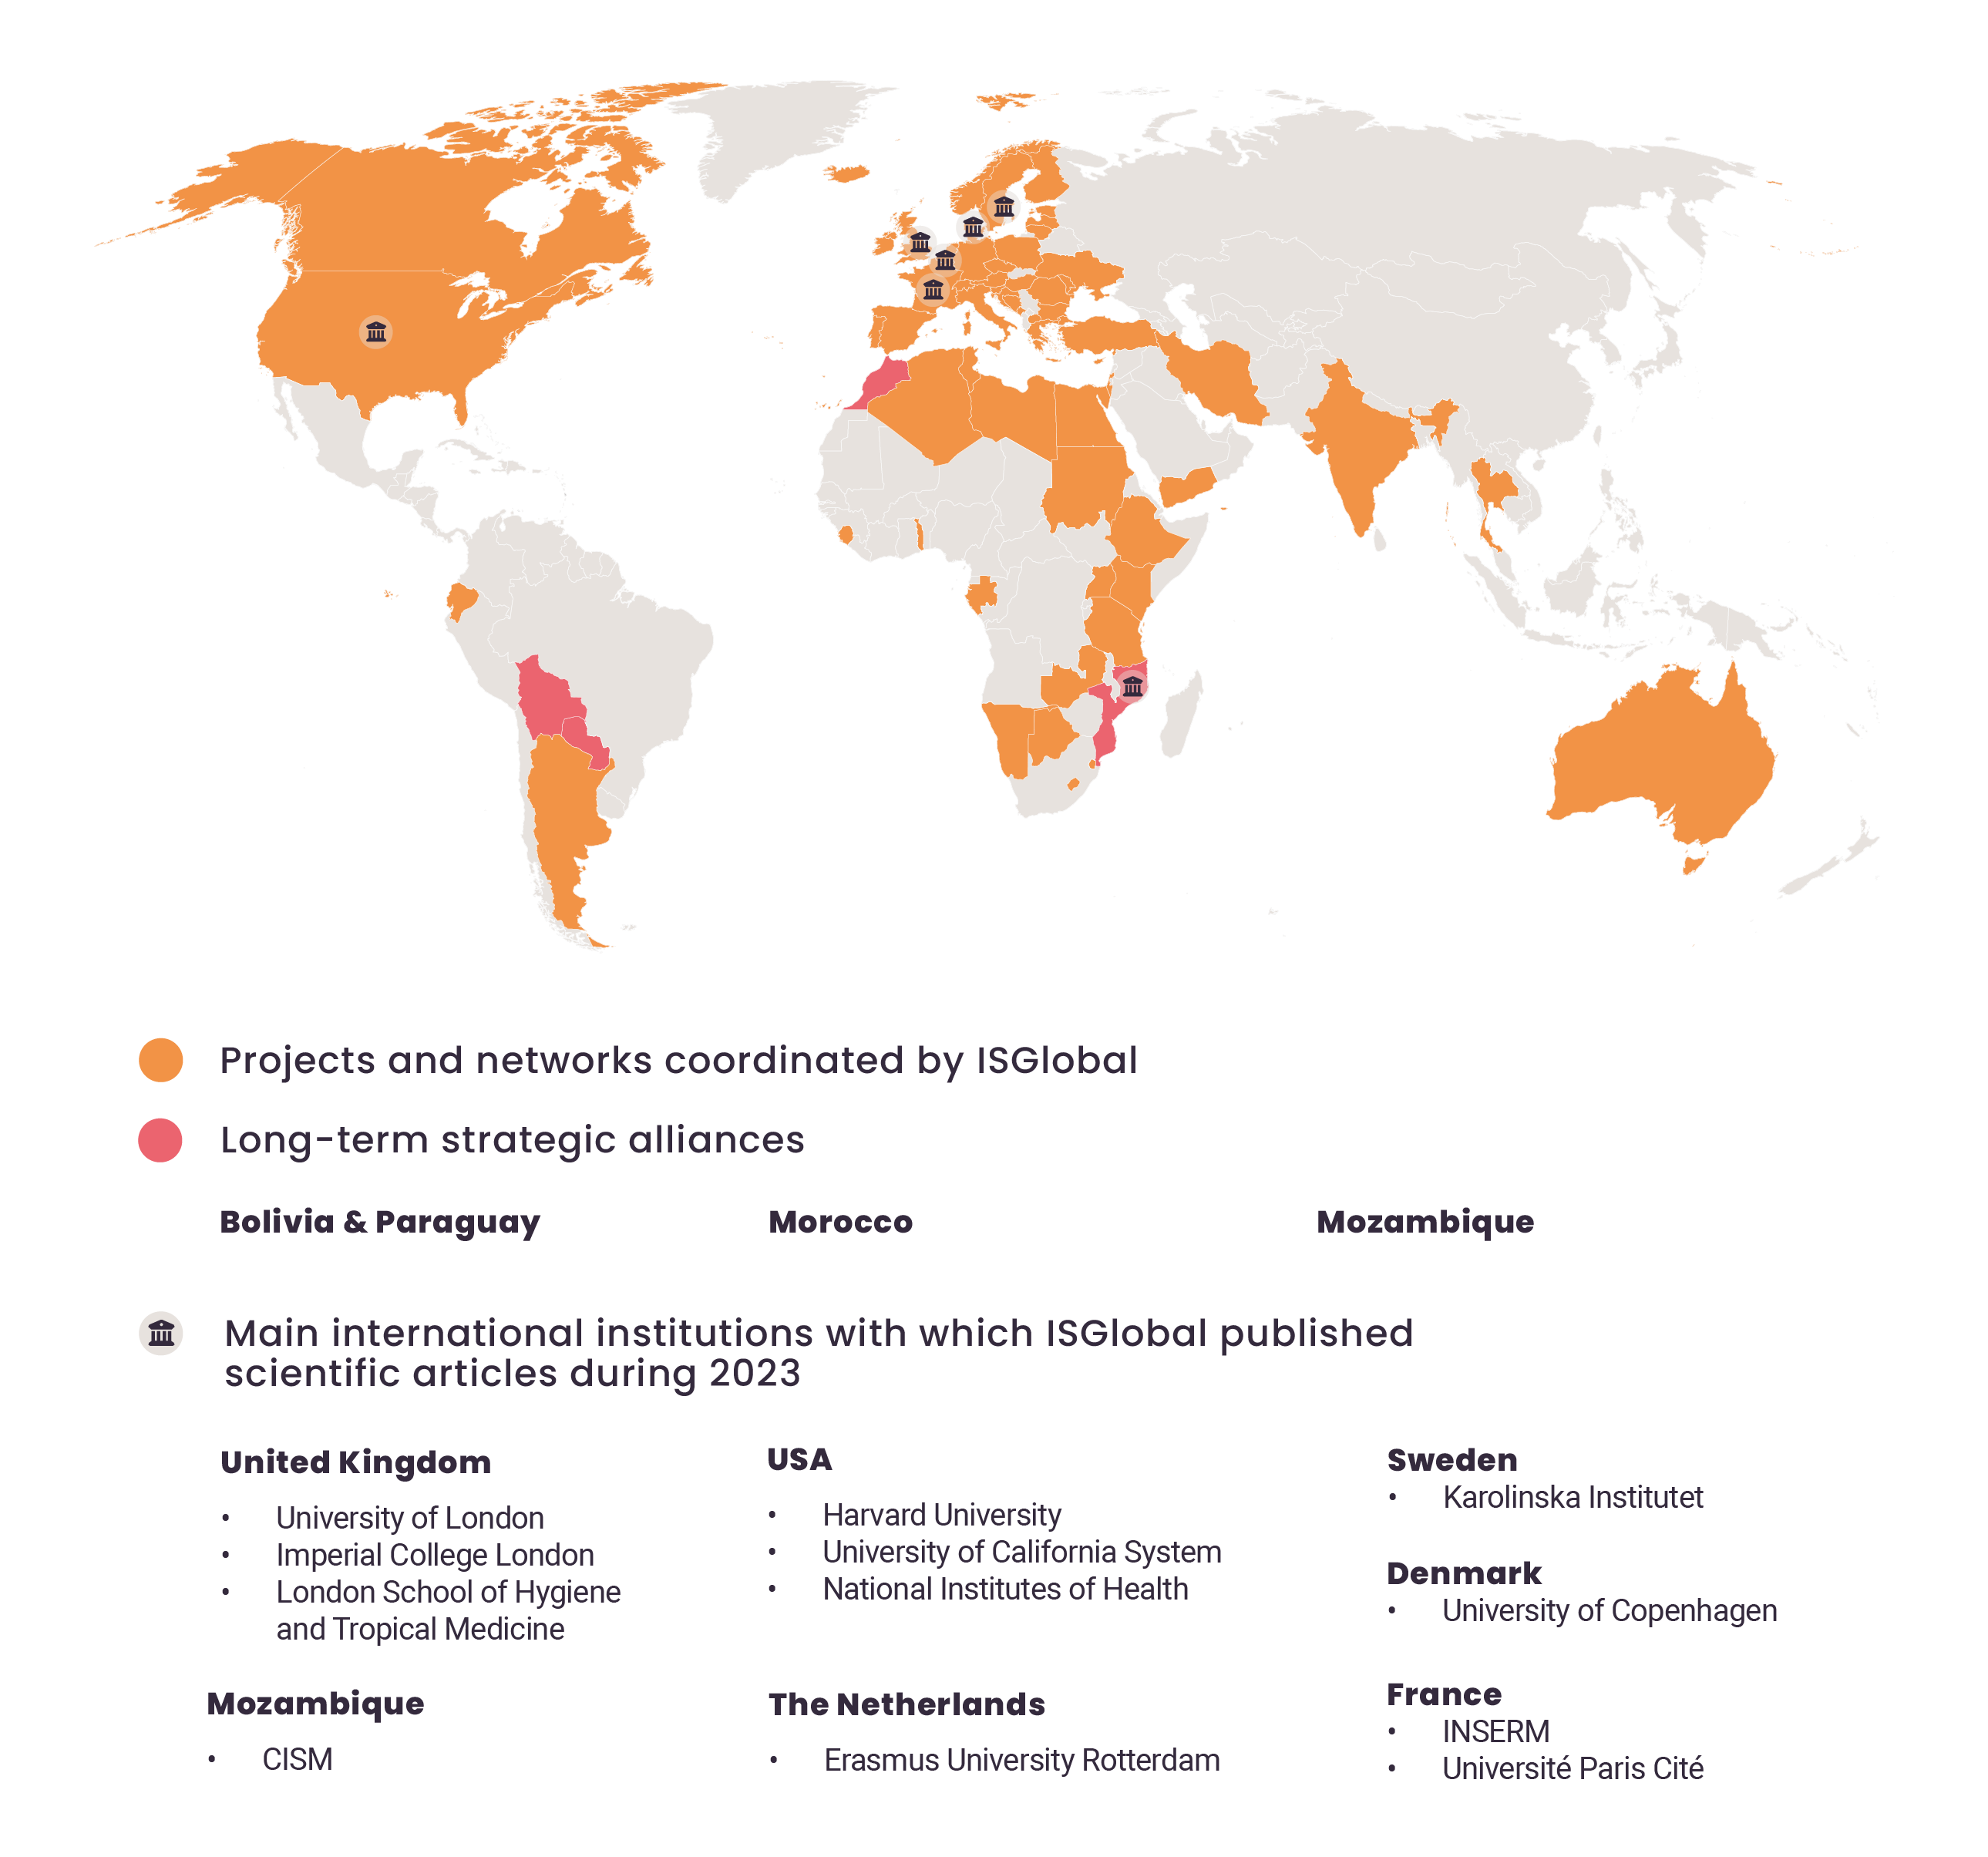 Mapa de proyectos destacados y alianzas estratégicas de largo recorrido de ISGlobal para el año 2023